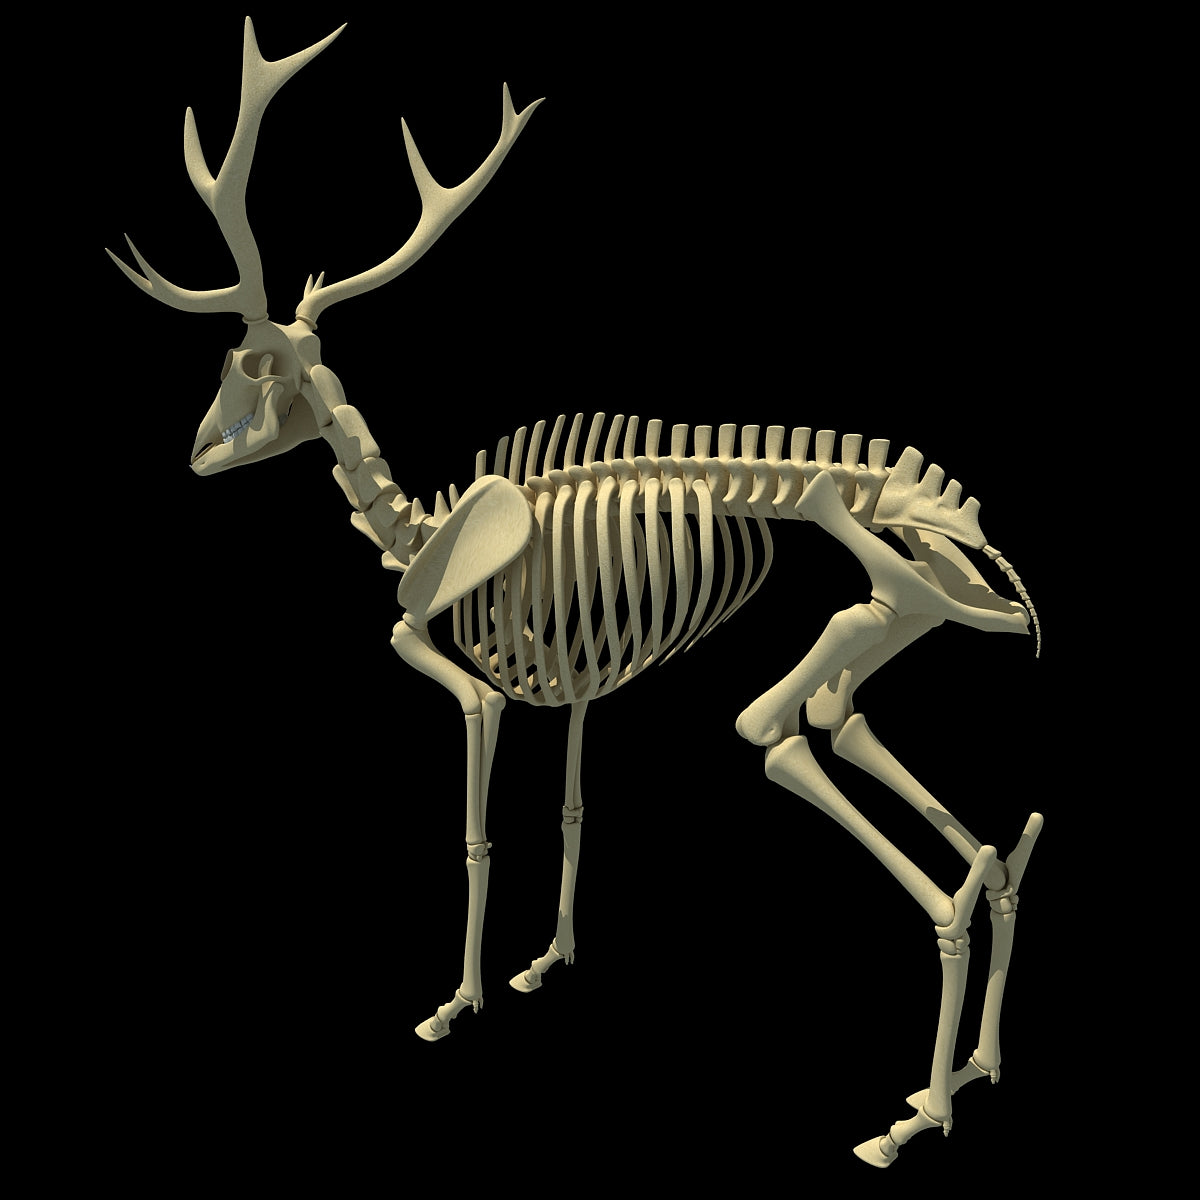 Deer Skeleton